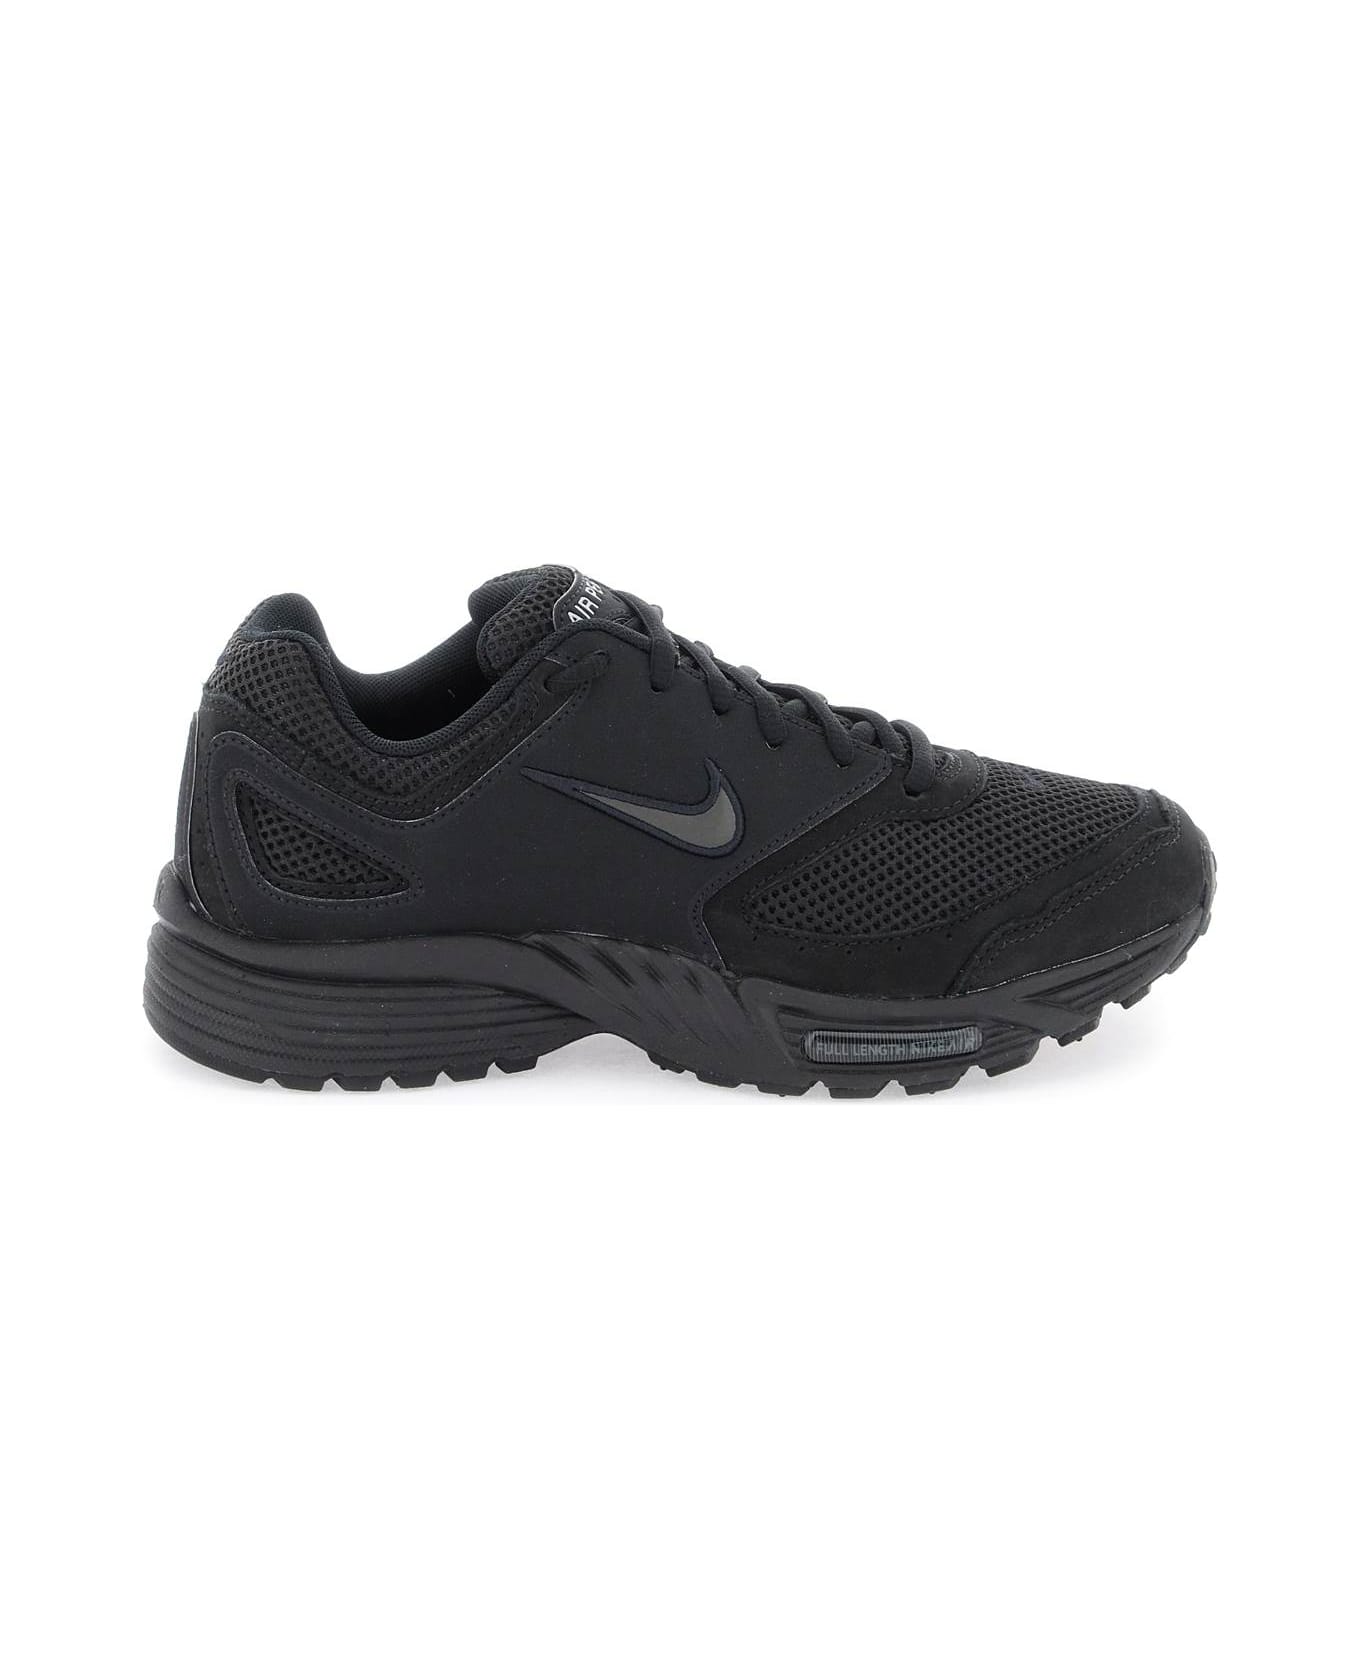 Comme Des Garçons Homme Plus Air Pegasus 2005 Sp Sneakers X Nike - BLACK (Black)